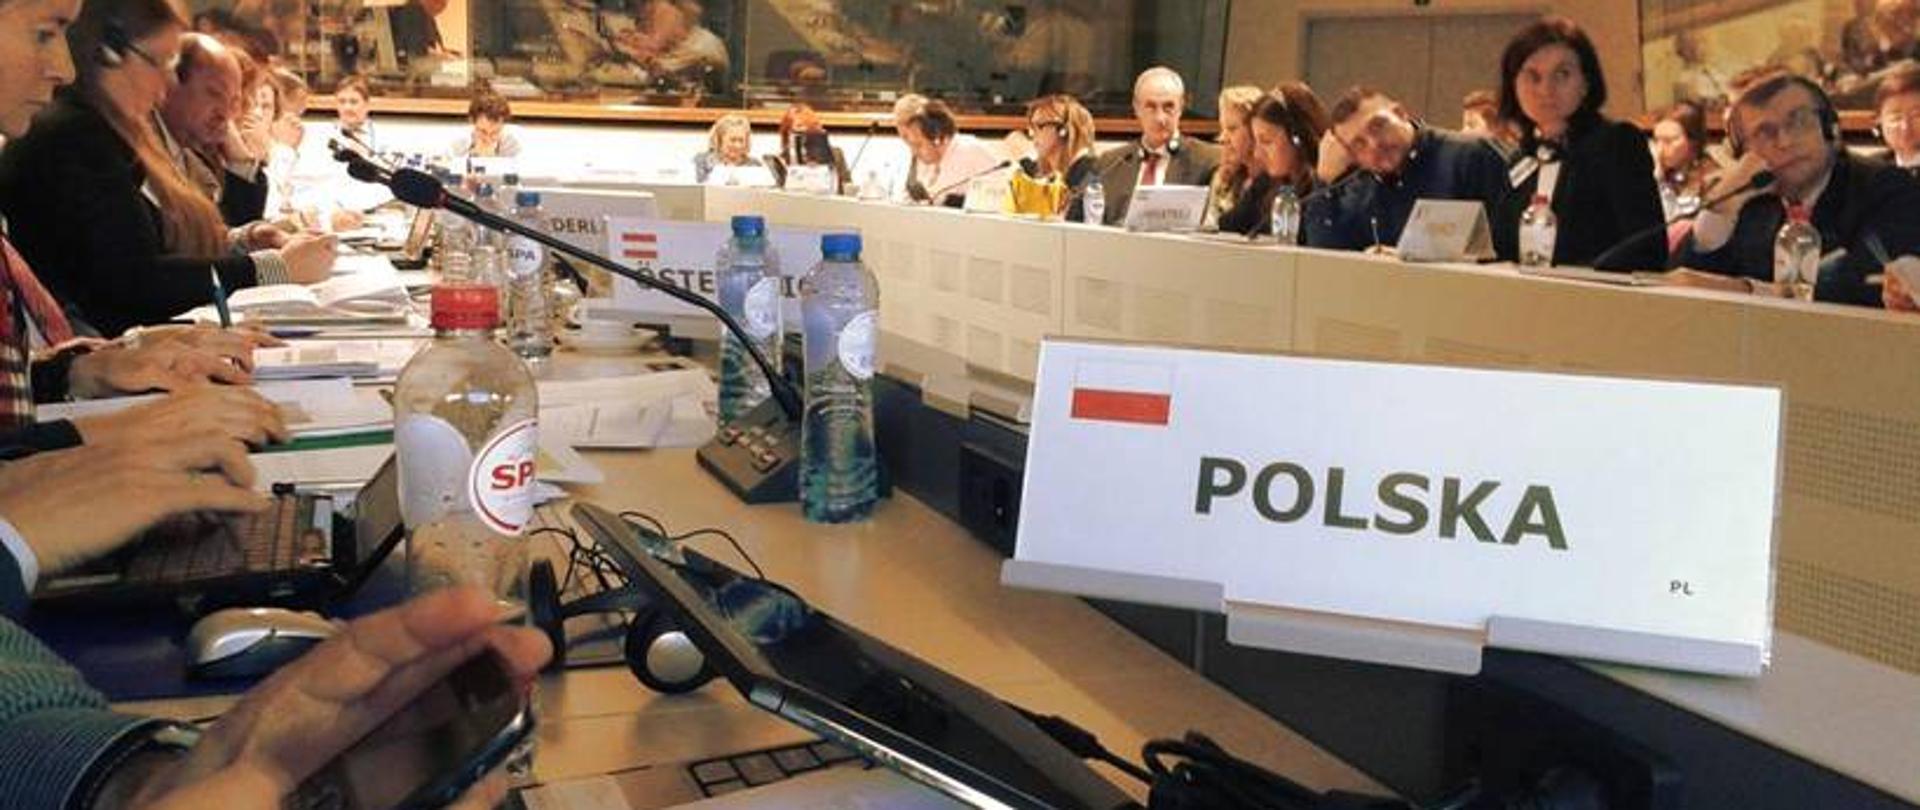 Bilet wskazujący miejsca dla przedstawicieli Polski przy stole konferencyjnym